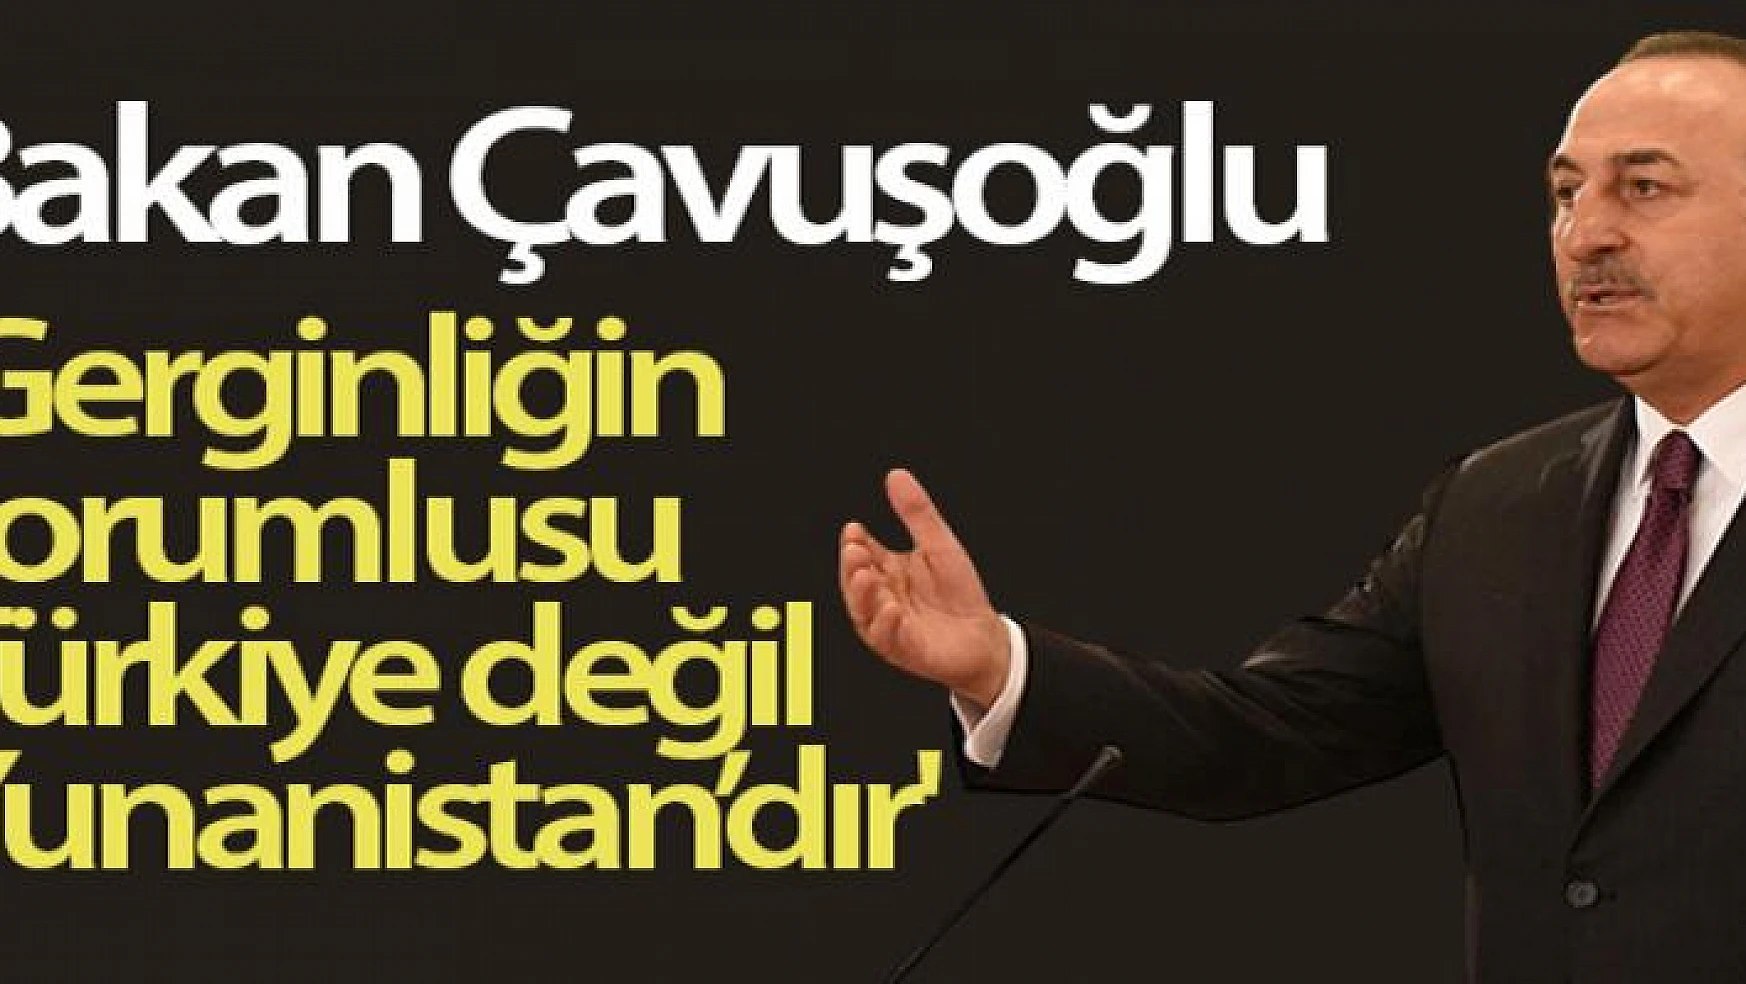 Bakan Çavuşoğlu: Gerginliğin sorumlusu Türkiye değil Yunanistan'dır